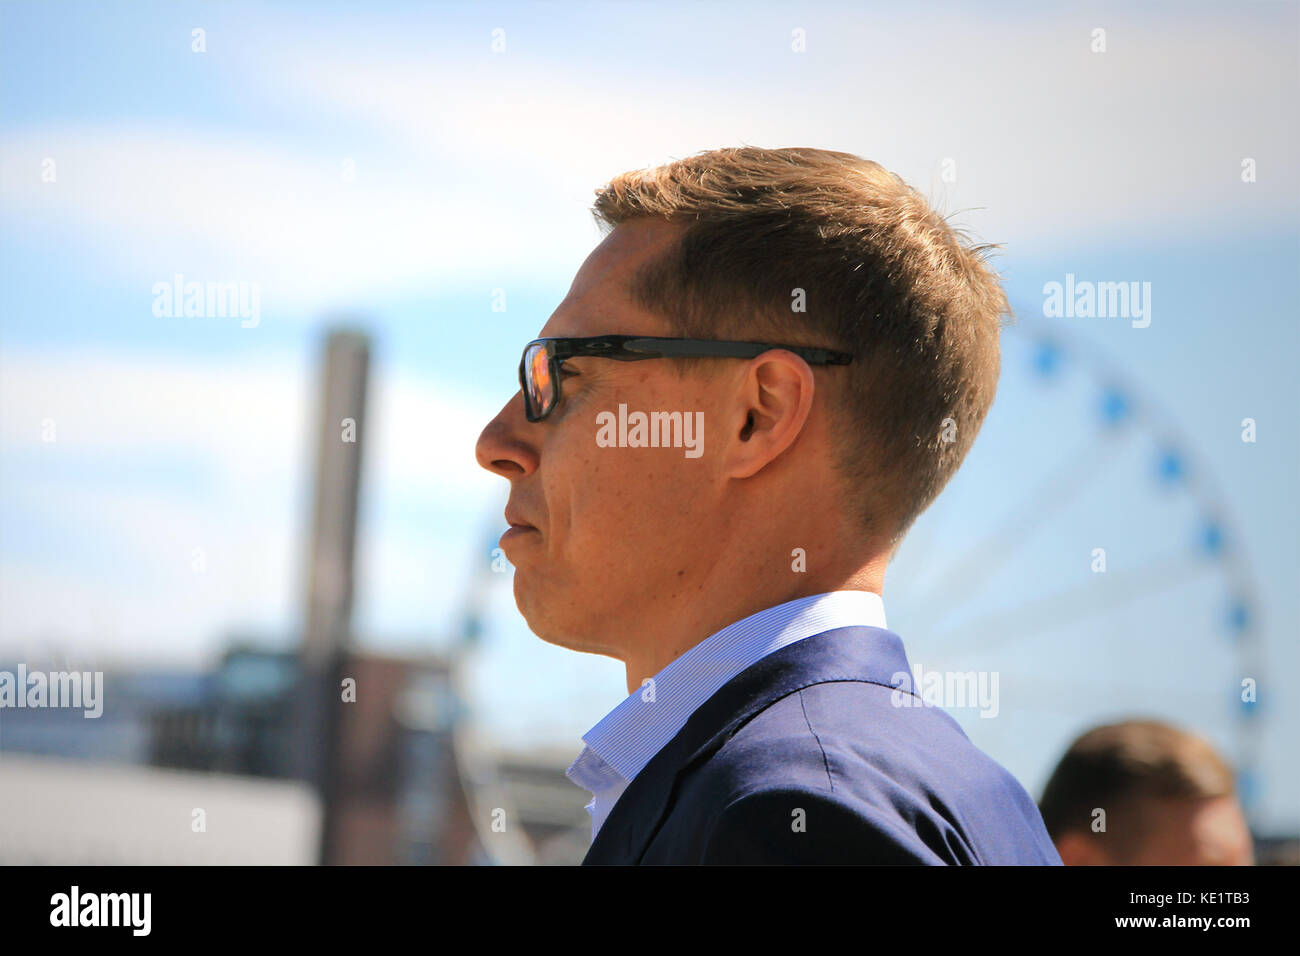 Helsinki, Finnland - 15. Juni 2016: finnische Politiker, ehemaliges Mitglied der EU und ehemaliger Ministerpräsident Finnlands, Alexander Stubb in enger Profil. s Stockfoto